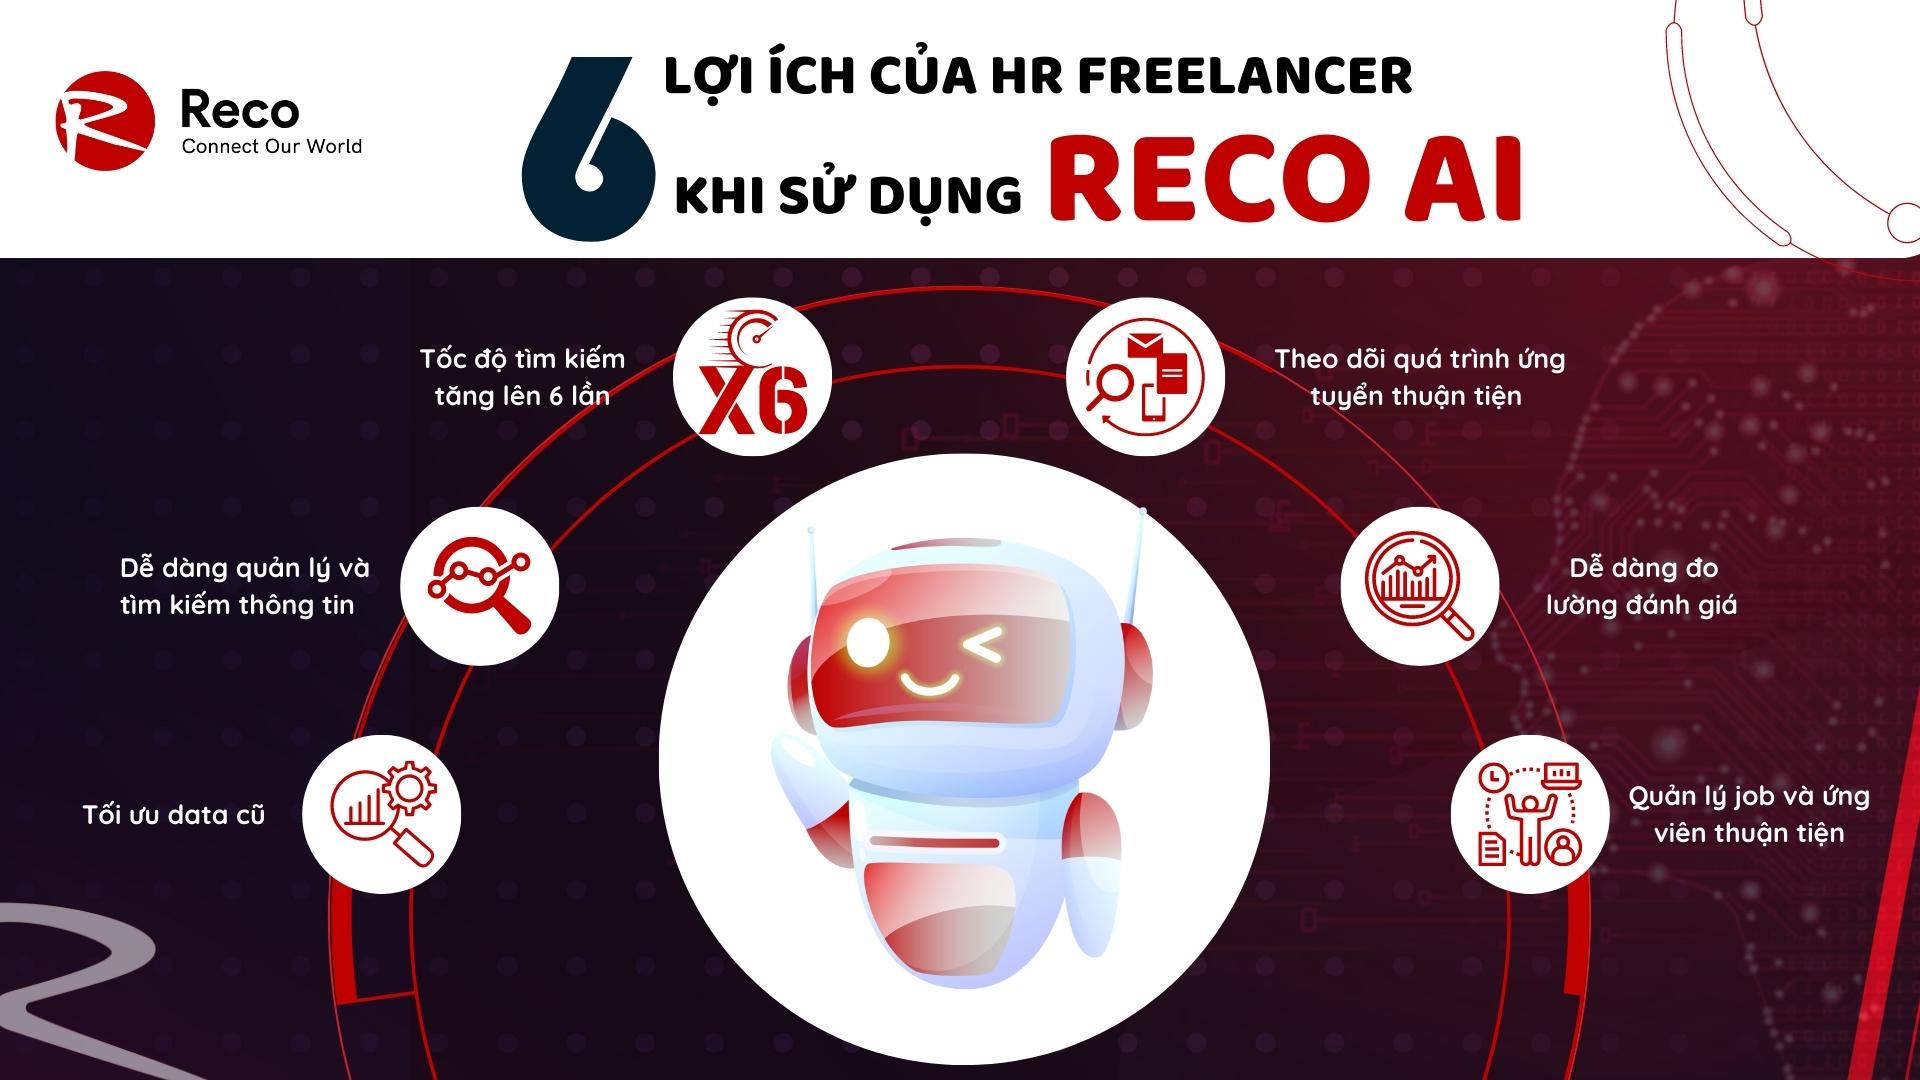 RECO AI – X6 lần tốc độ điền thông tin và tìm kiếm ứng viên